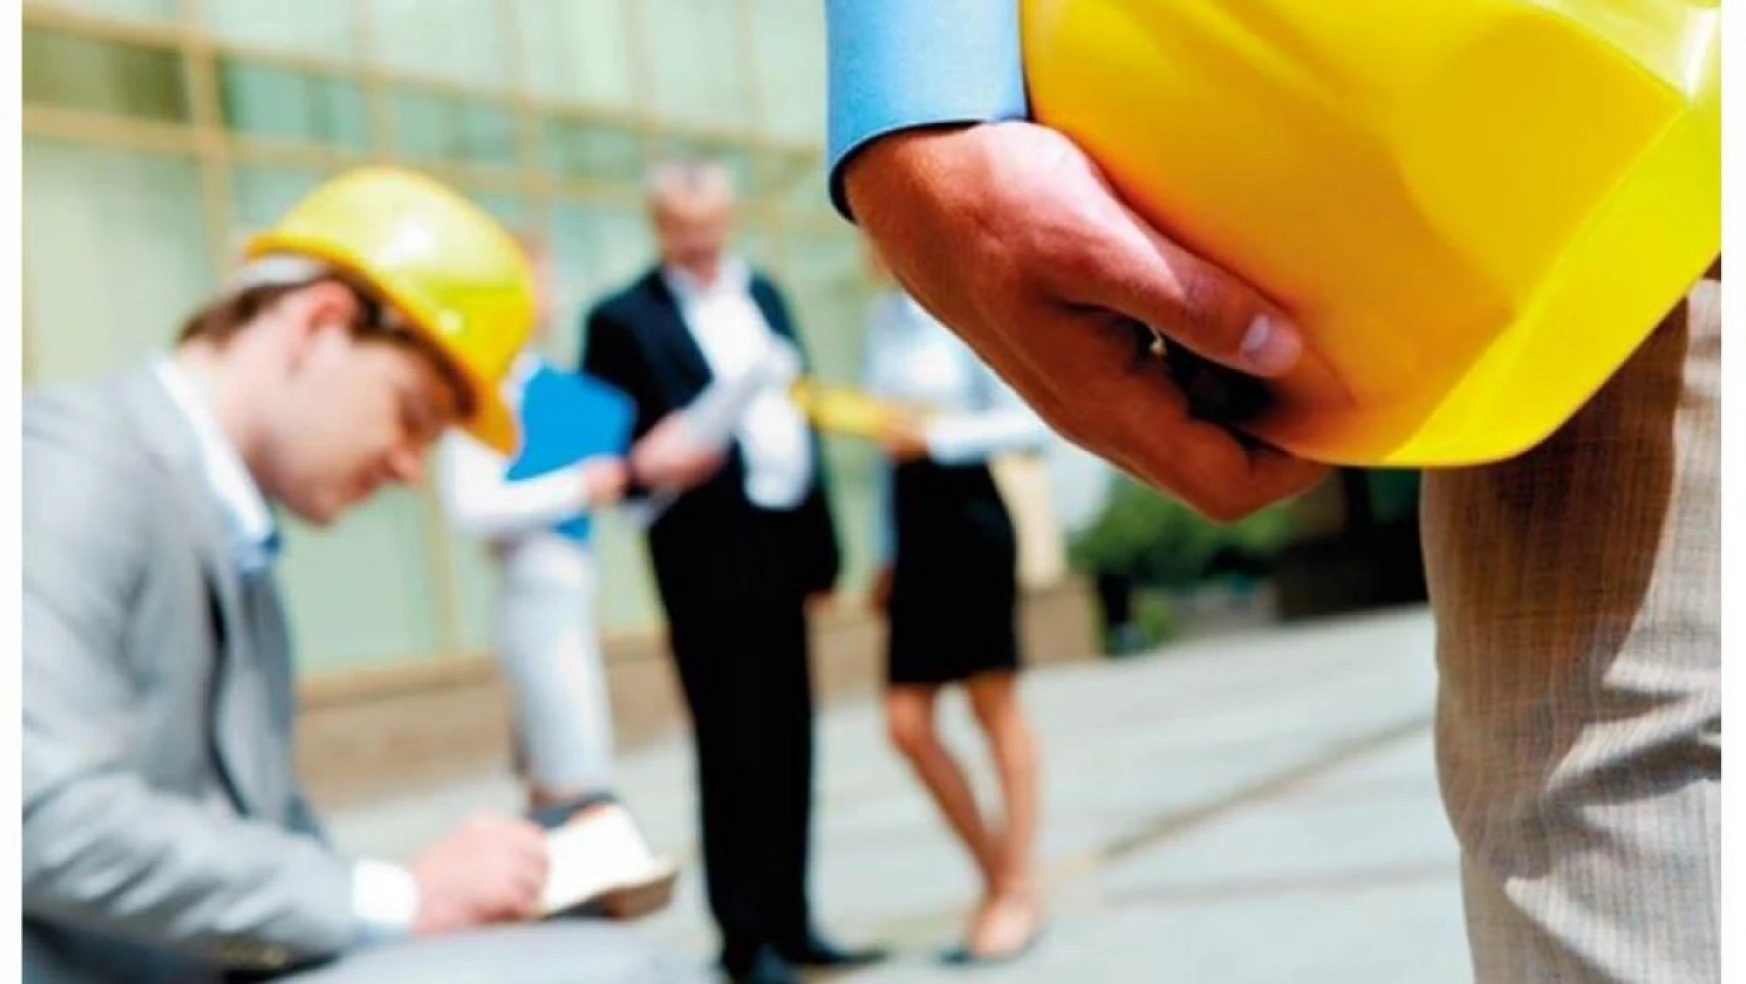 İş kazasının sigortalıdan kaynaklanması durumunda nasıl bir süreç işletilir?